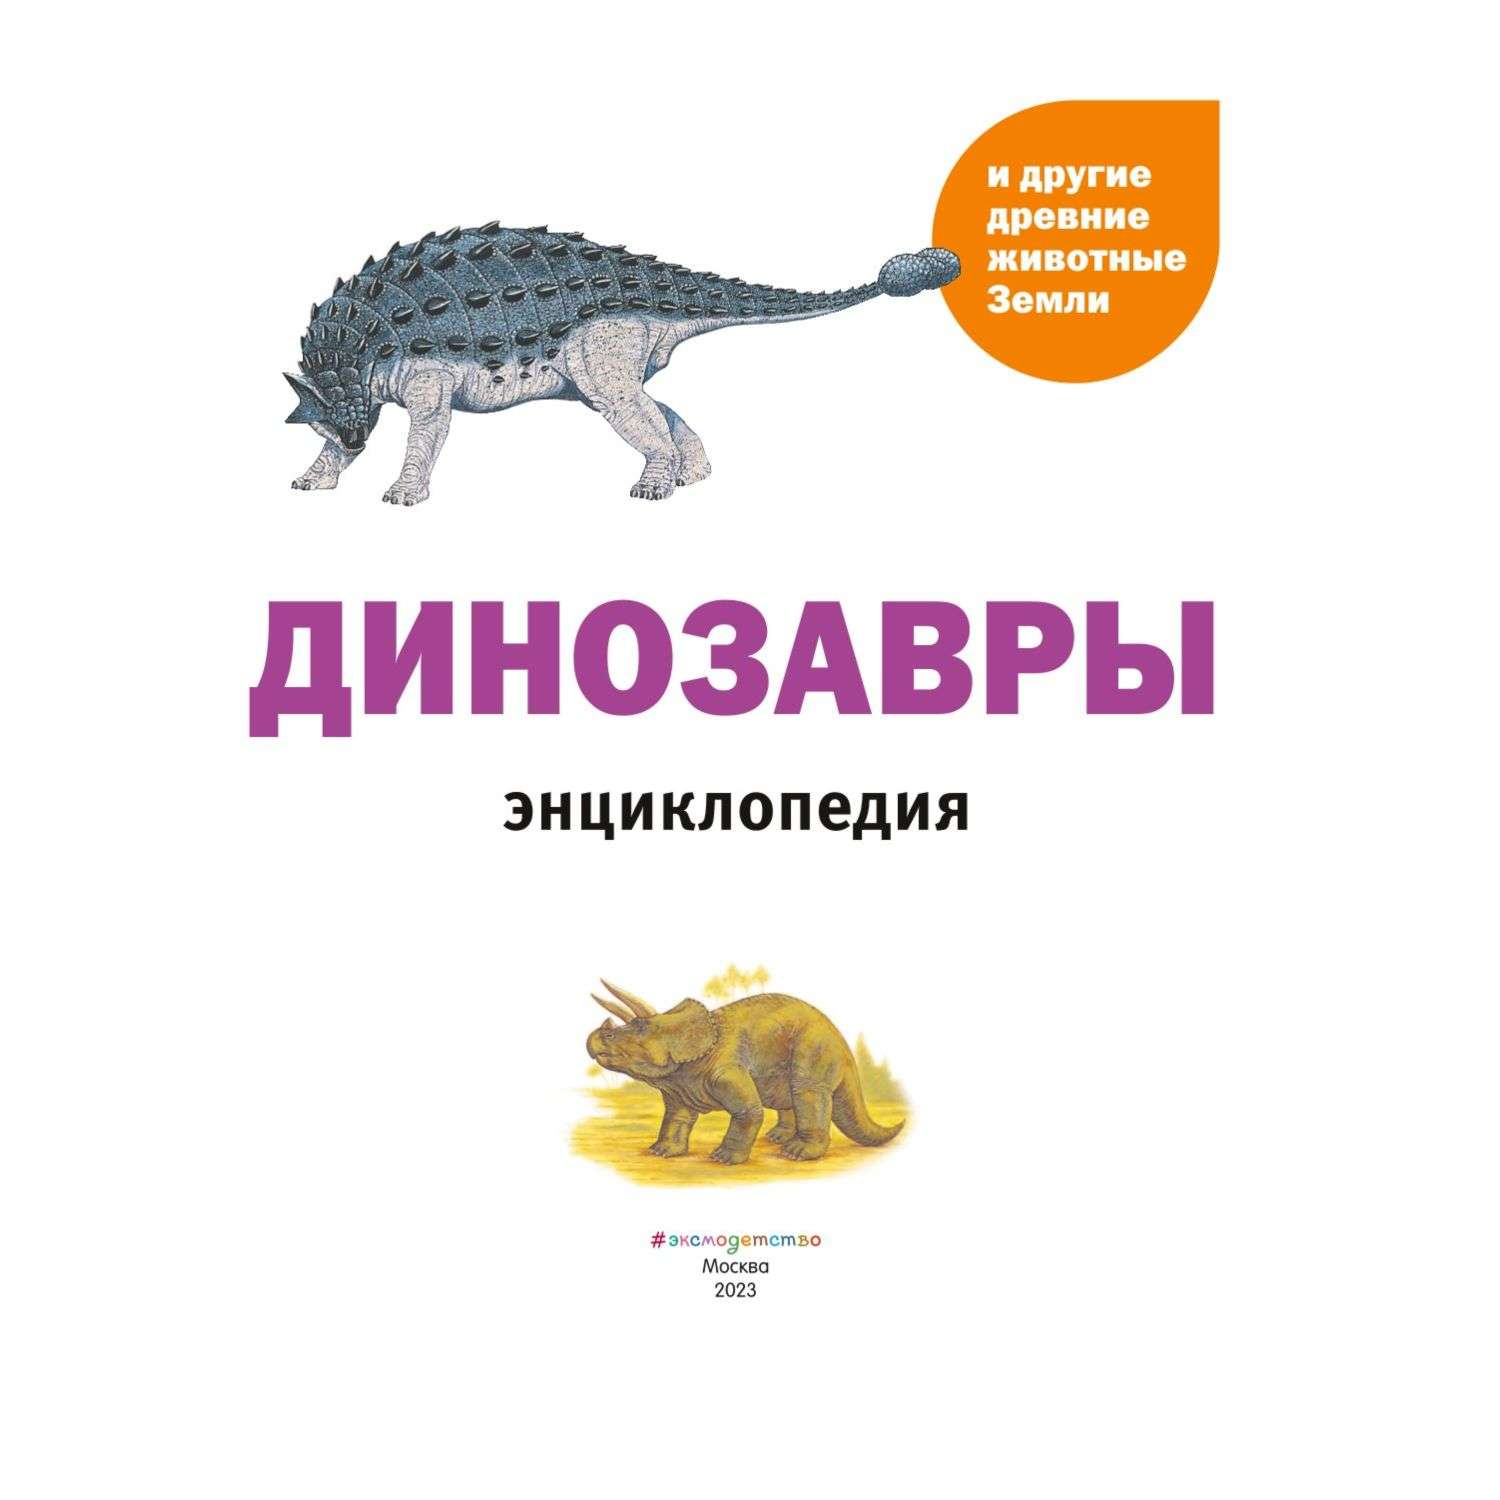 Книга Динозавры и другие древние животные Земли - фото 2